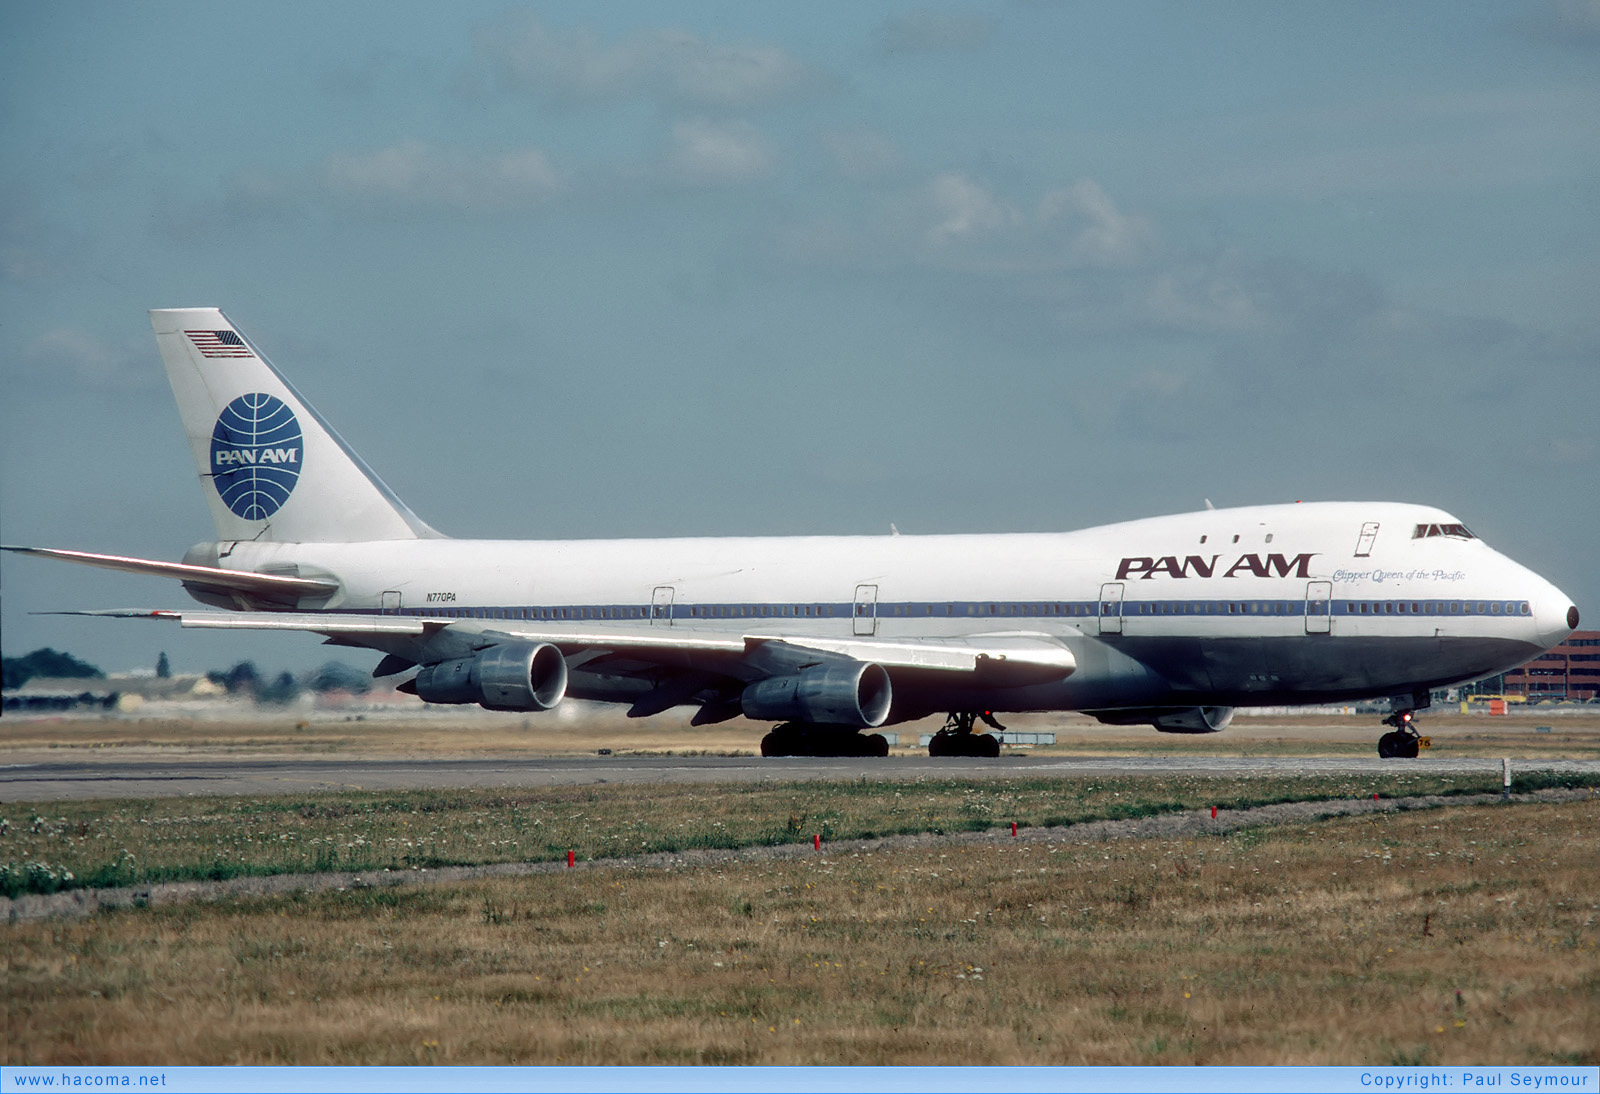 Foto von N770PA - Pan Am Clipper Great Republic / Bald Eagle - London Heathrow Airport - 11.08.1984